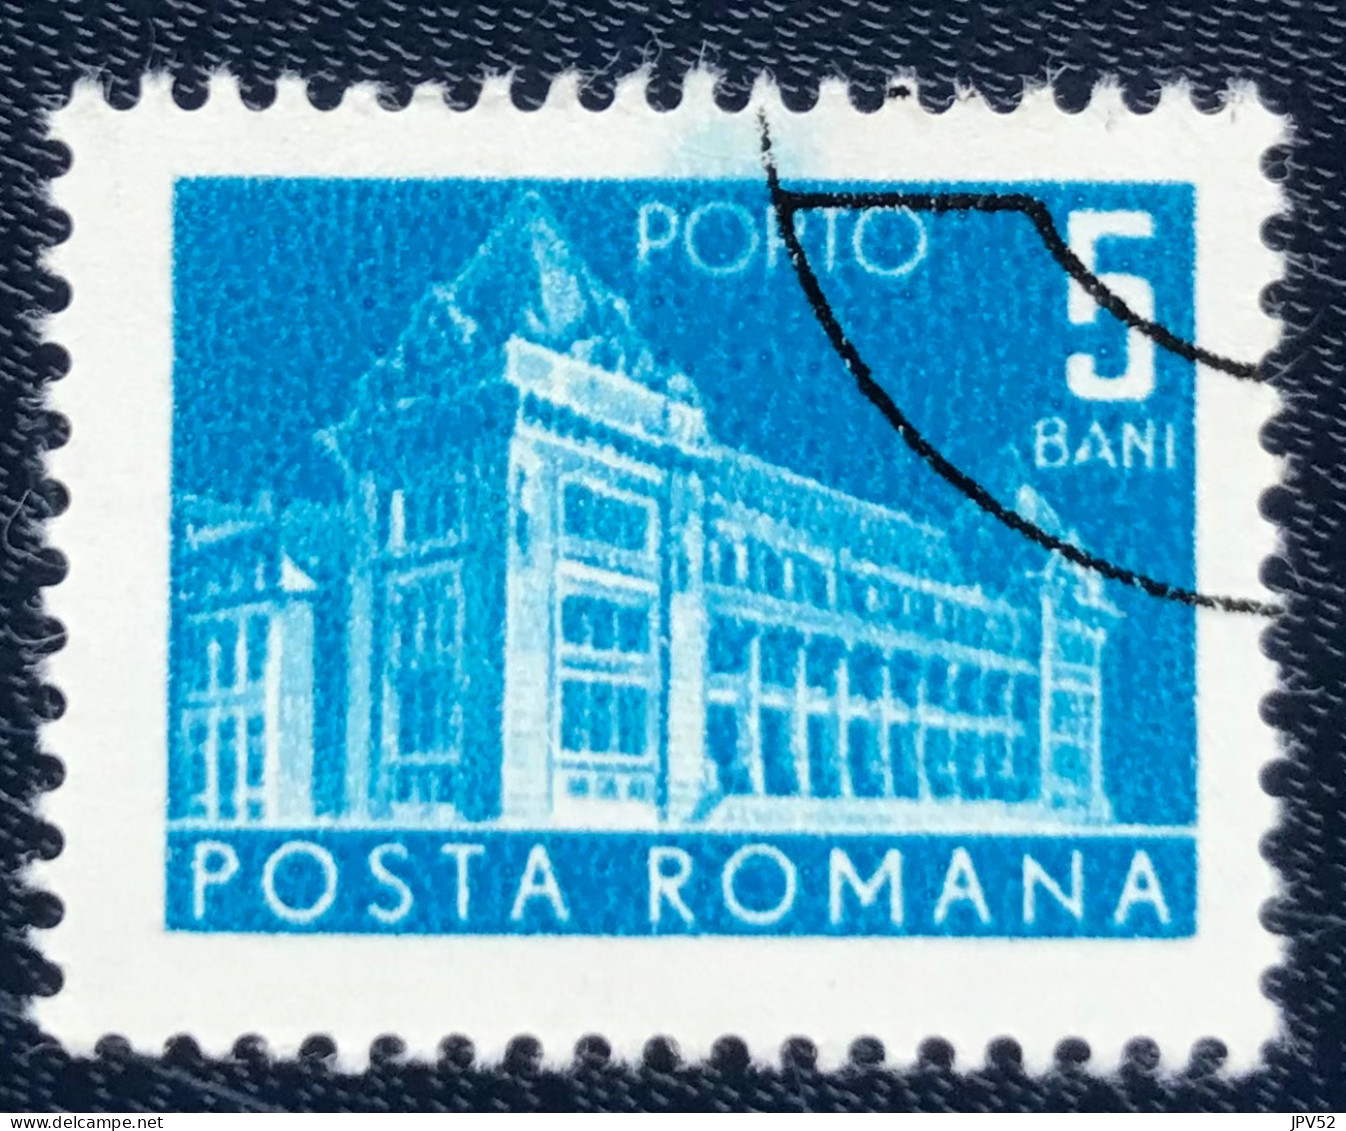 Romana - Roemenië - C14/54 - 1967 - (°)used - Michel 108 - Postkantoor - Postage Due